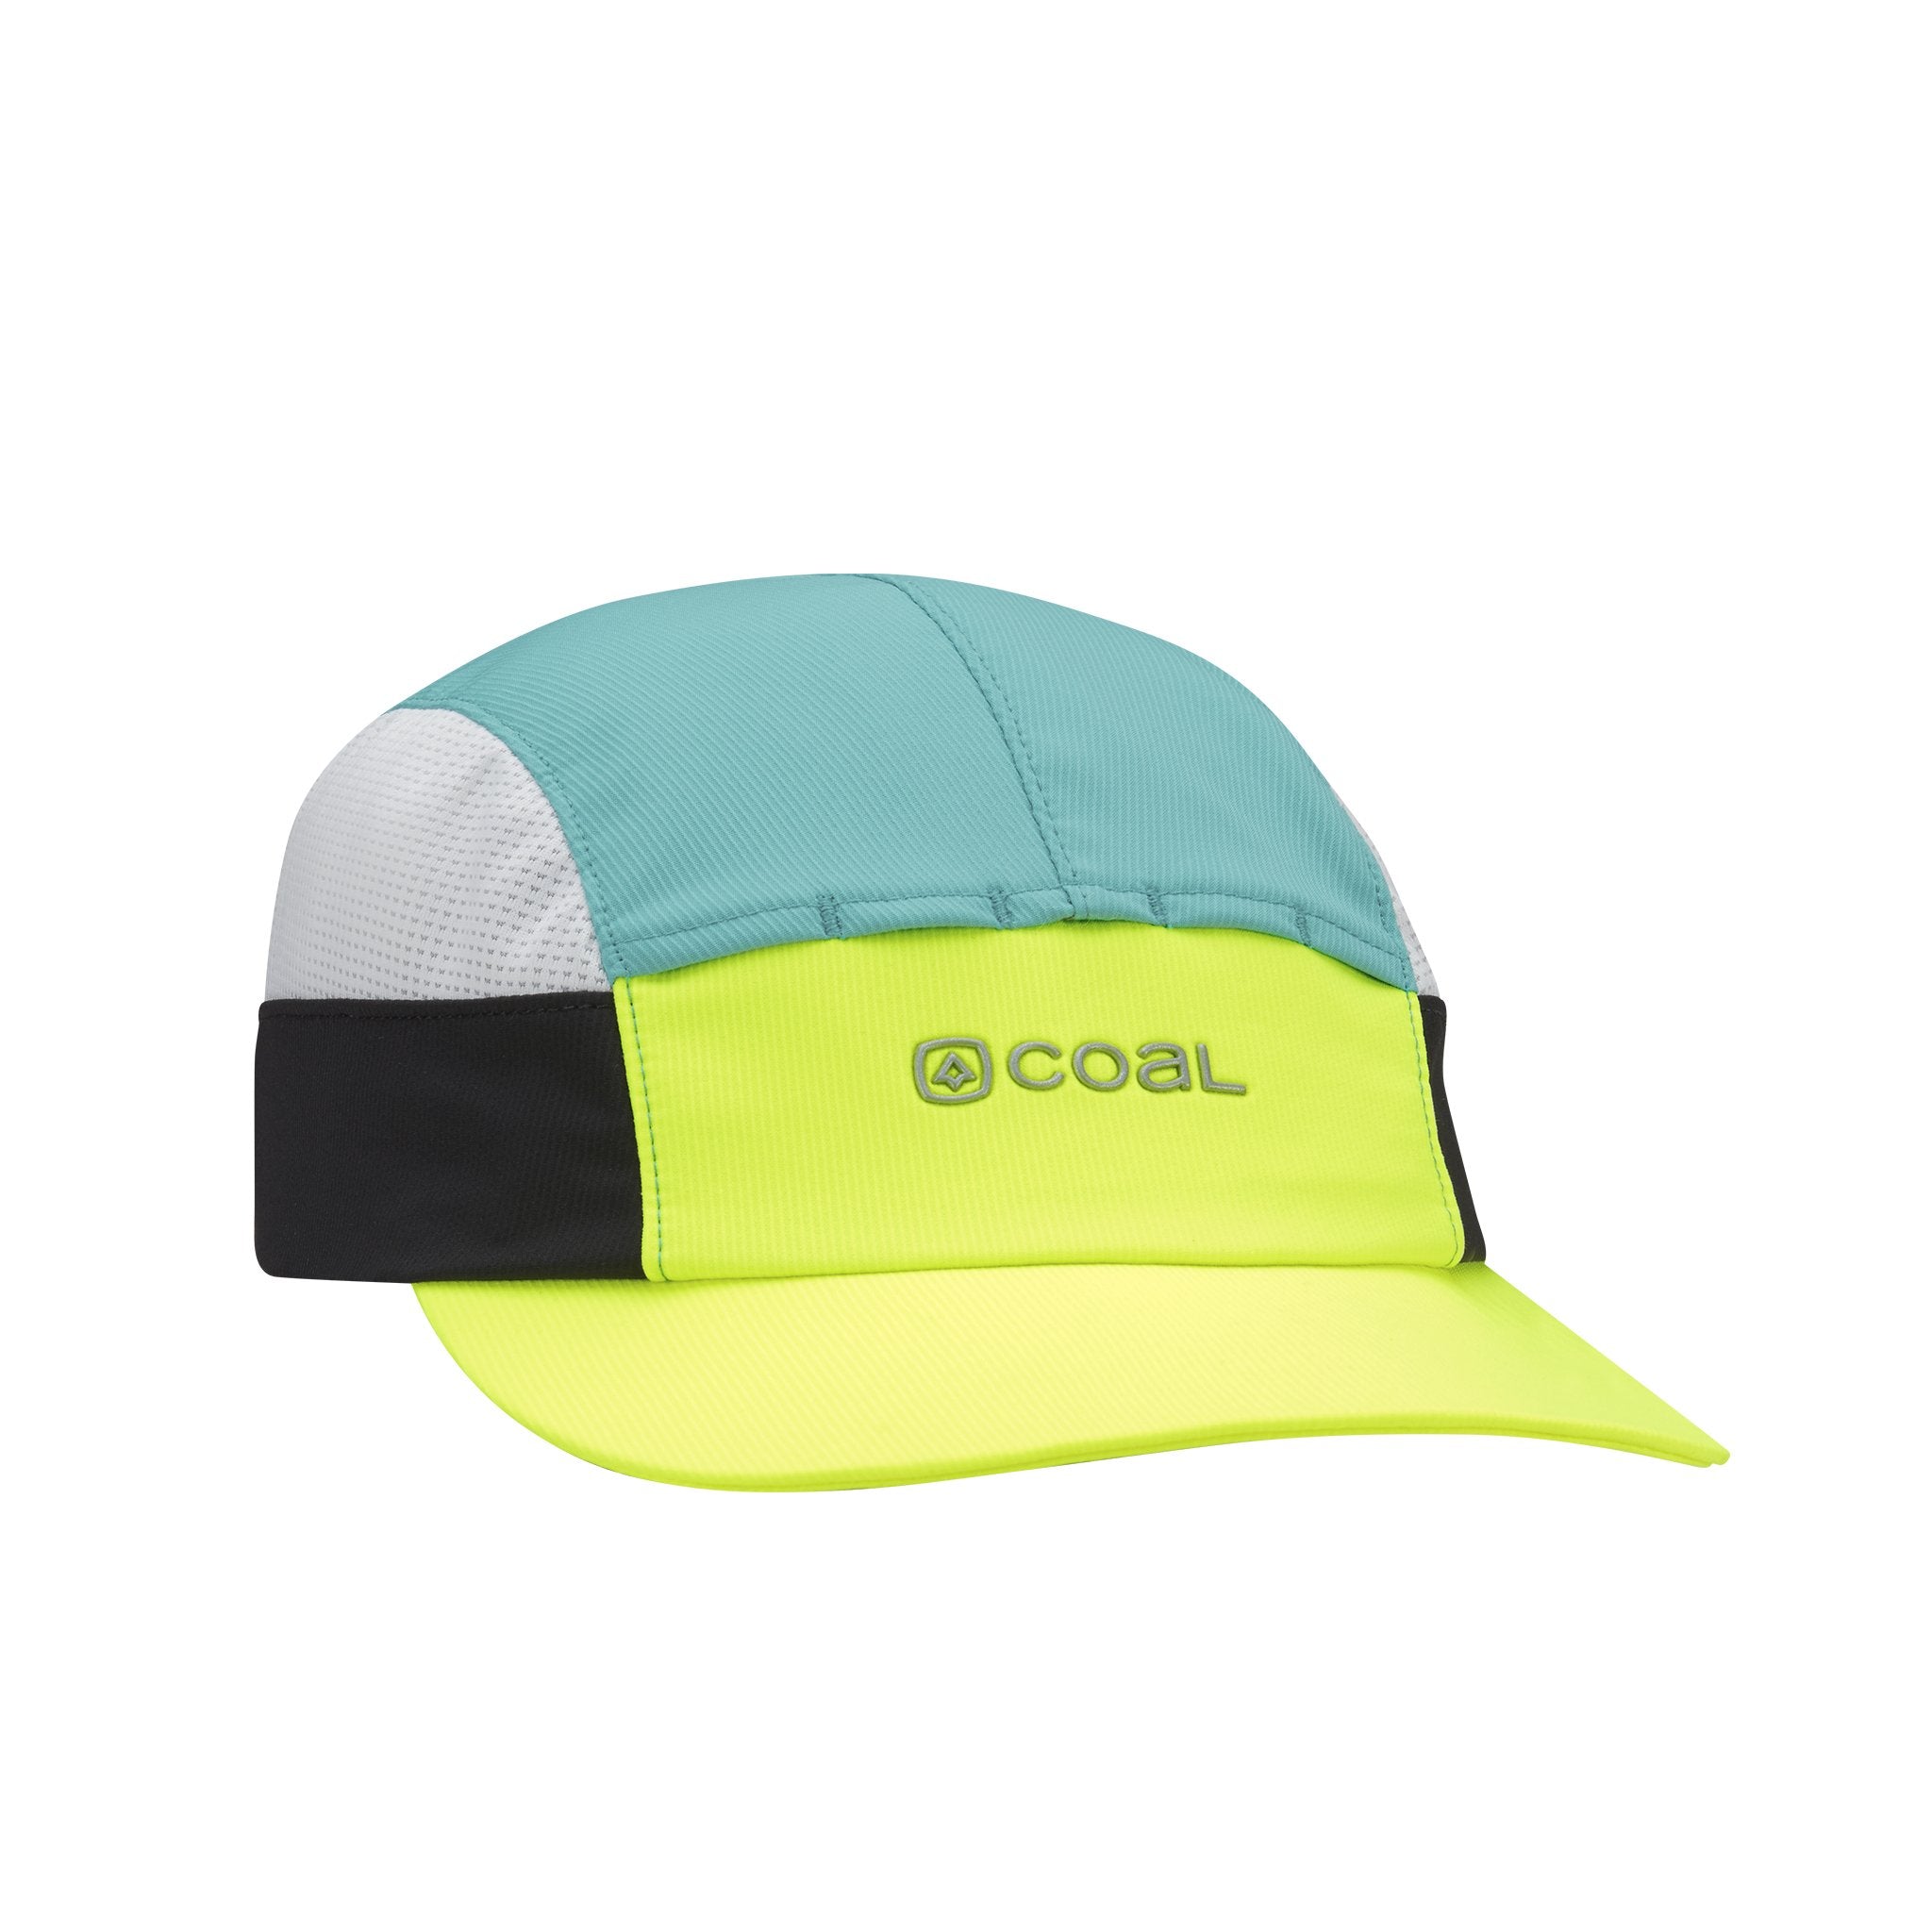 Coal Headwear The Deep River Cap - Ascent Outdoors LLC